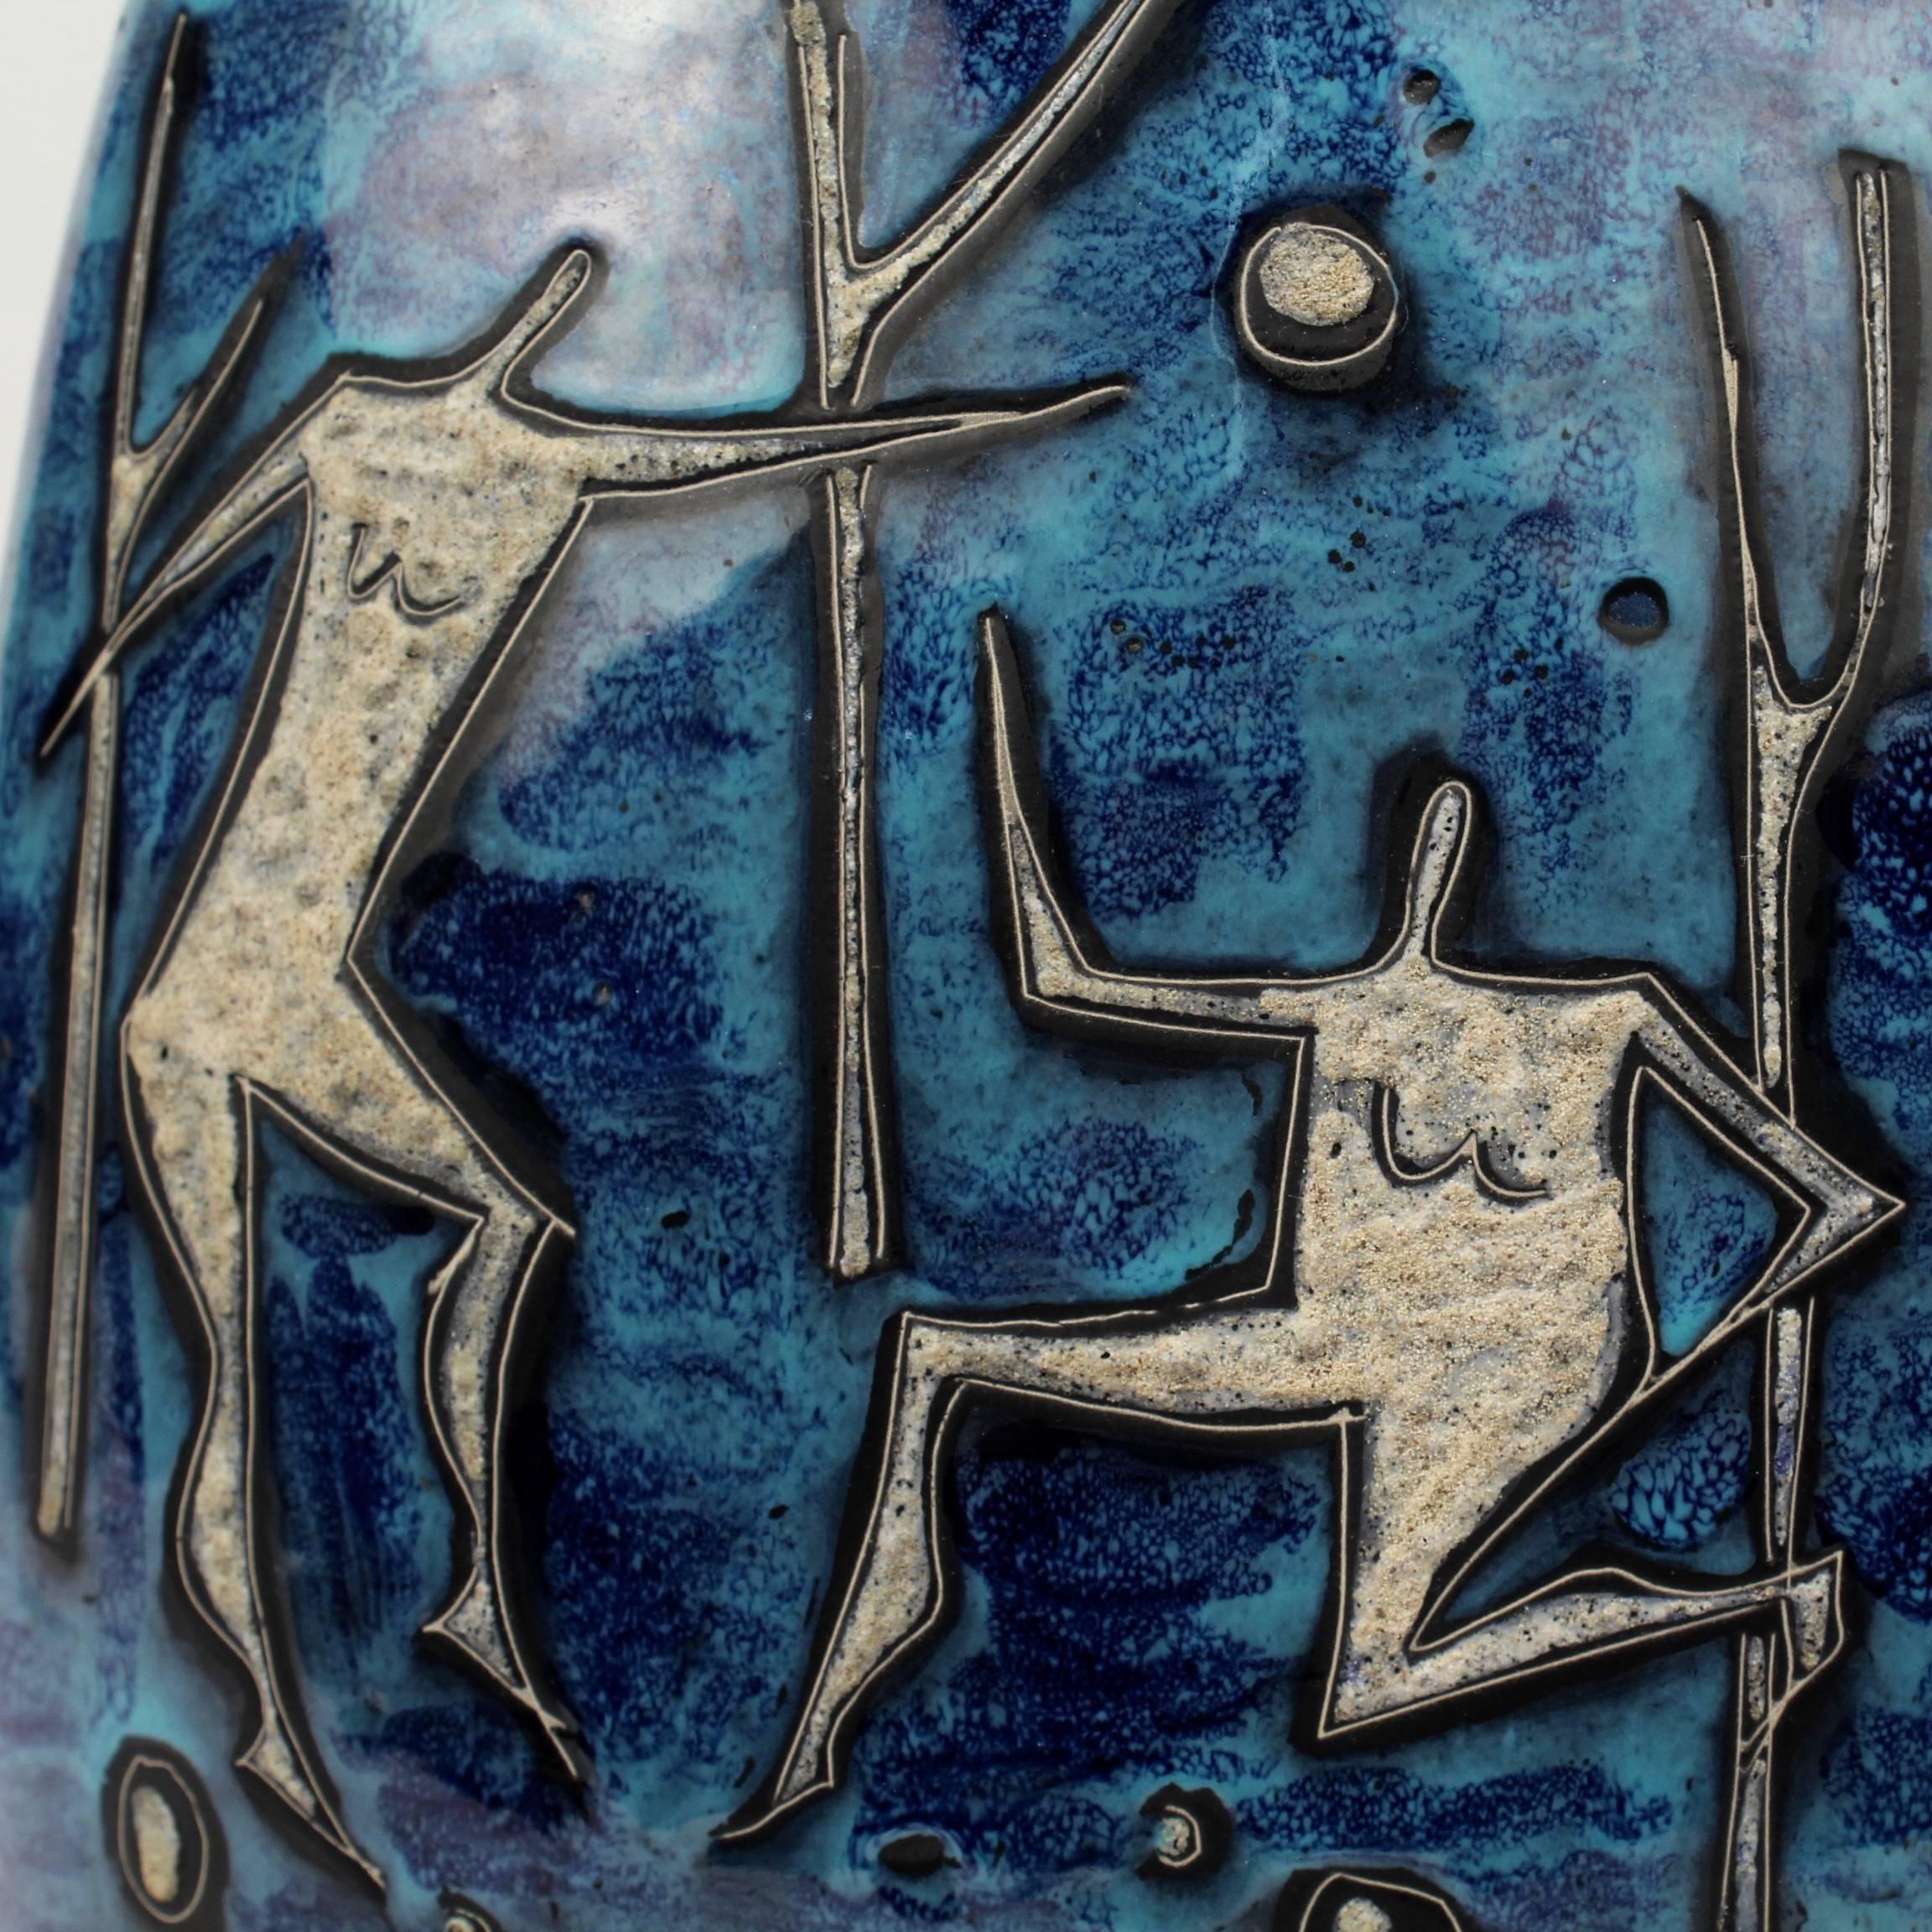 Un fantastique vase en poterie moderniste italienne de Gianni Tosin.

Avec une glaçure bleue marbrée de style Gambone et un décor de 